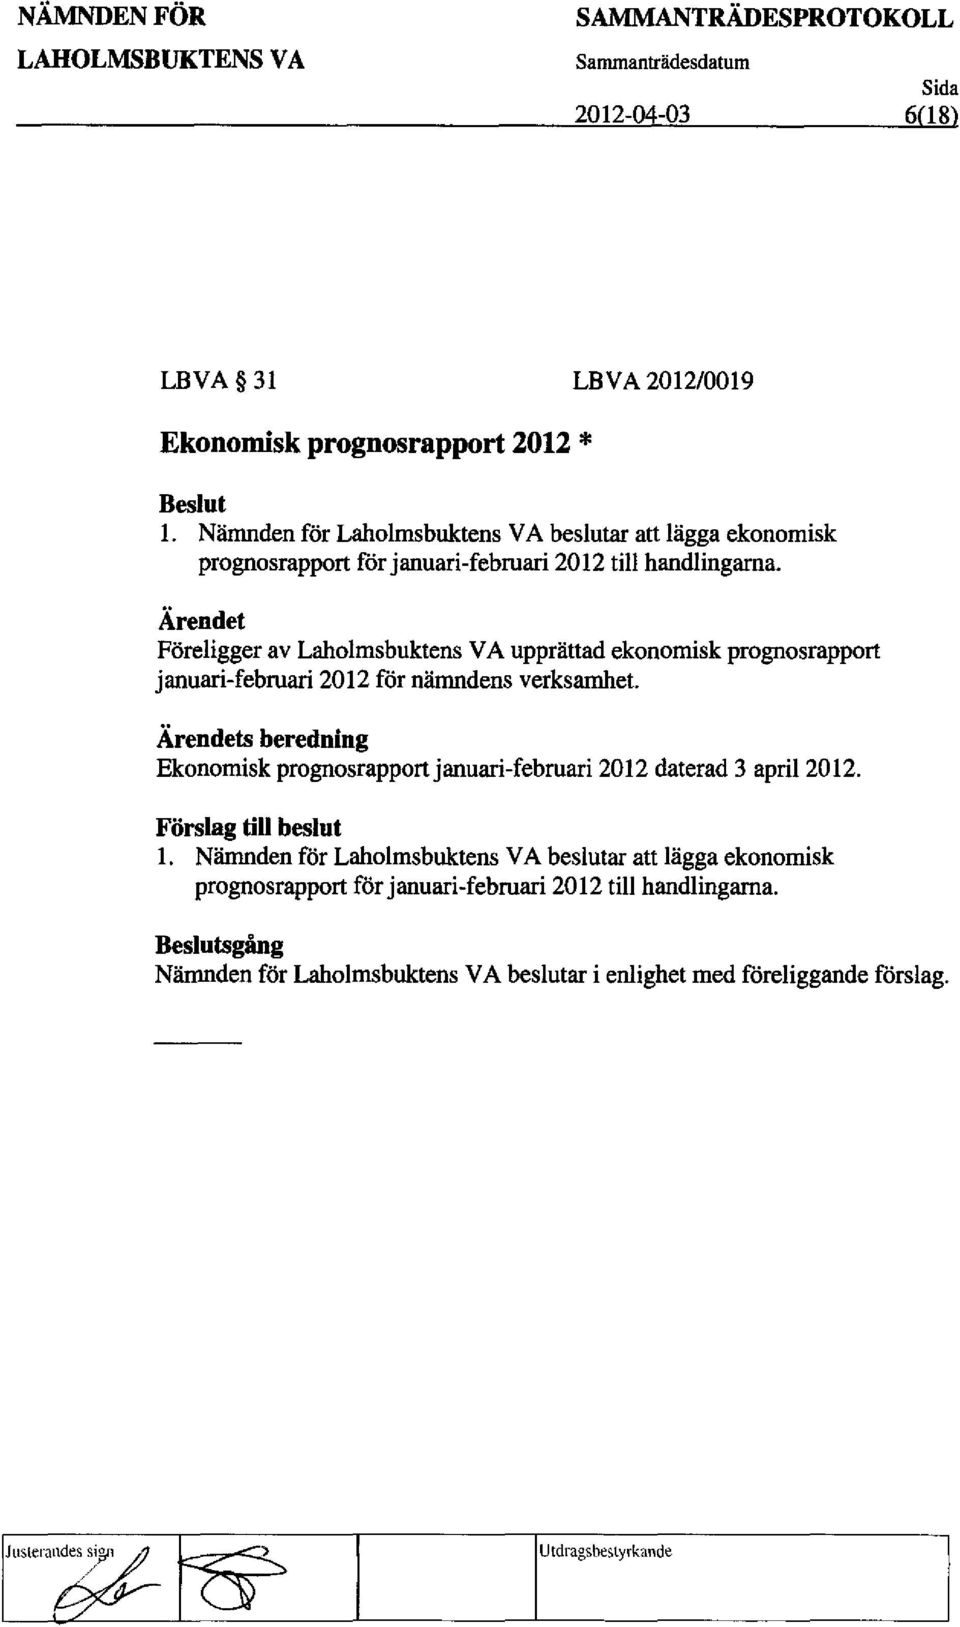 FOreligger av Laholmsbuktens VA upprattad ekonomisk prognosrapport januari-februari 2012 for namndens verksamhet.